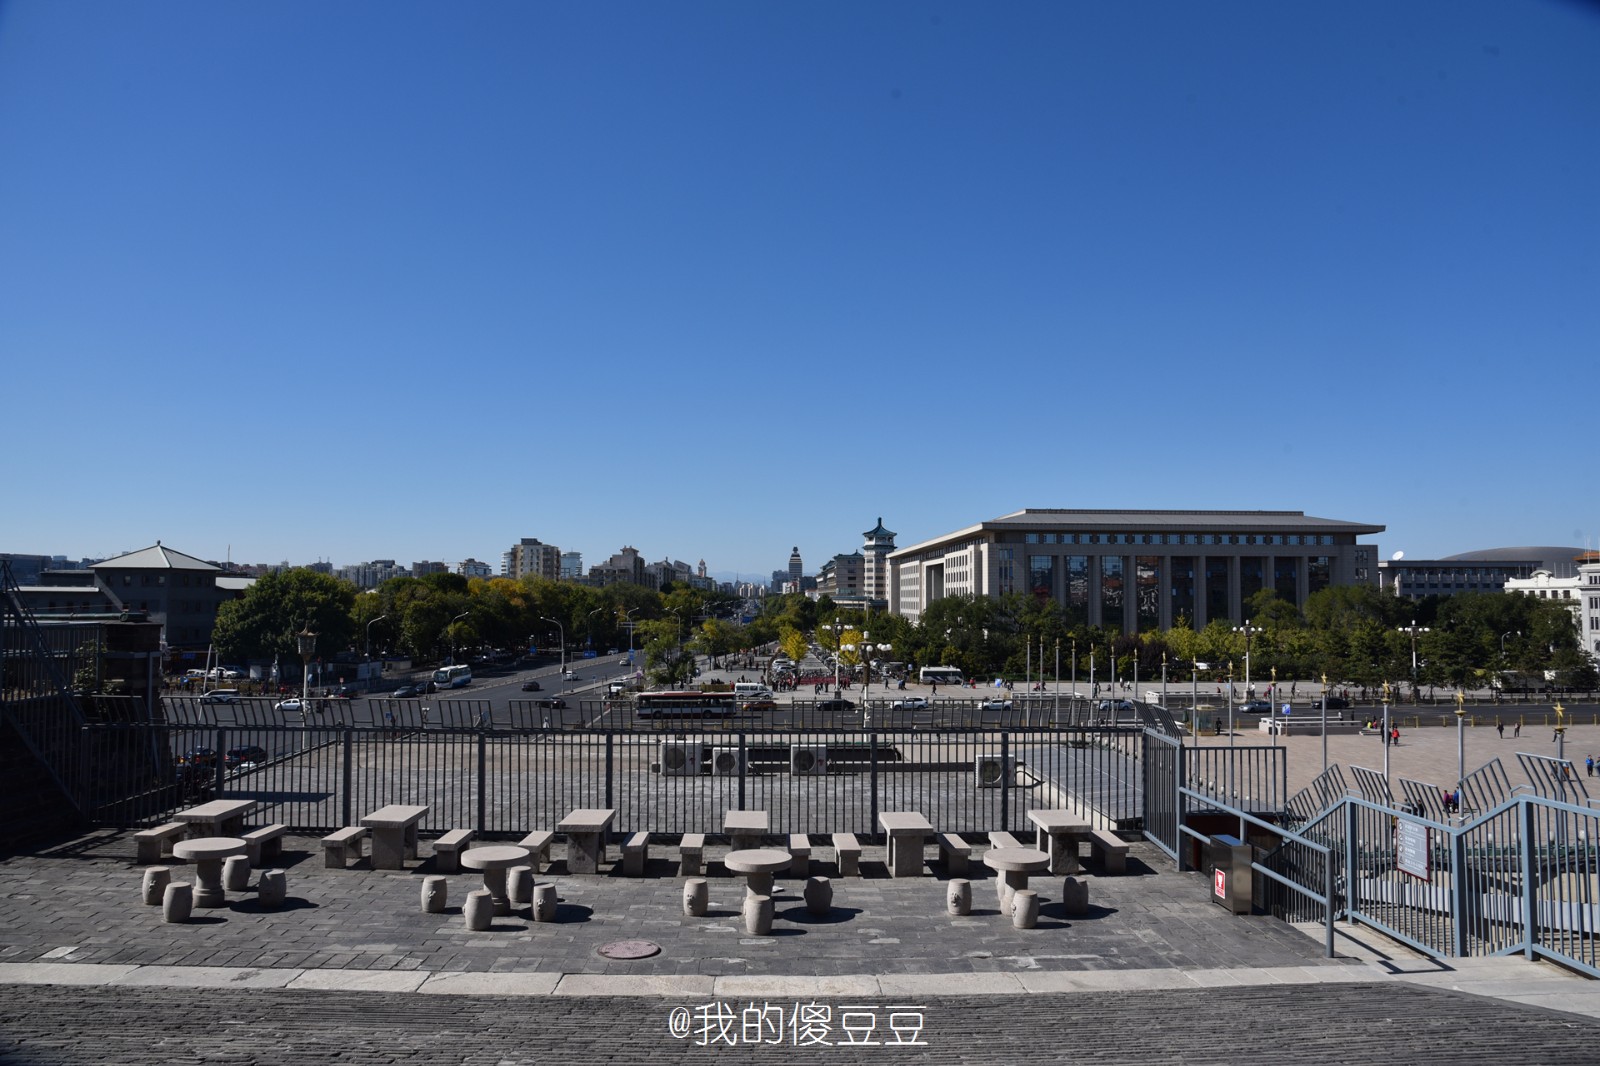 四九城好地方 北京现存最大的城门 说正名鲜为